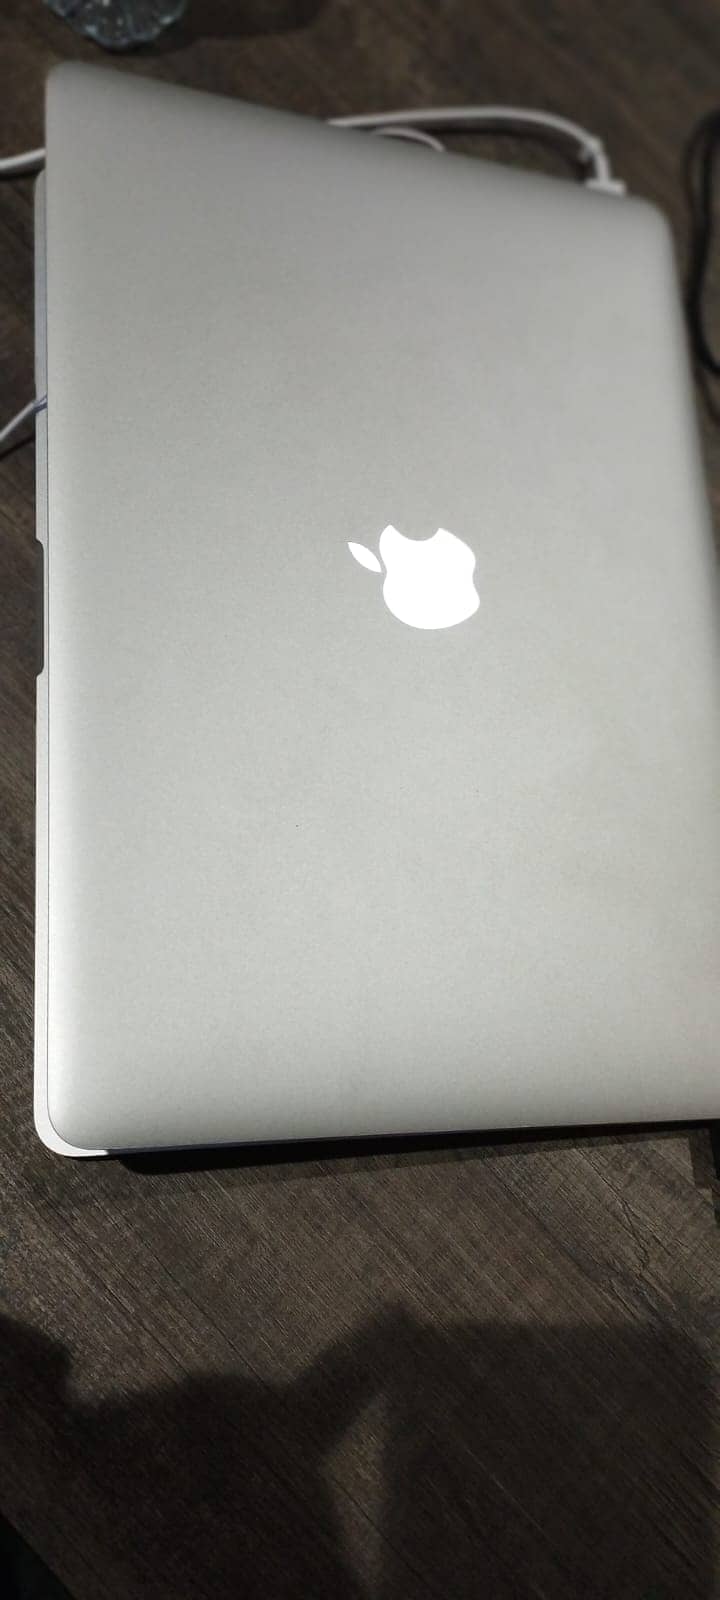 MacBook Pro "Core i7" 2.5 15" Mid-2014 (DG) Mint Condition 2